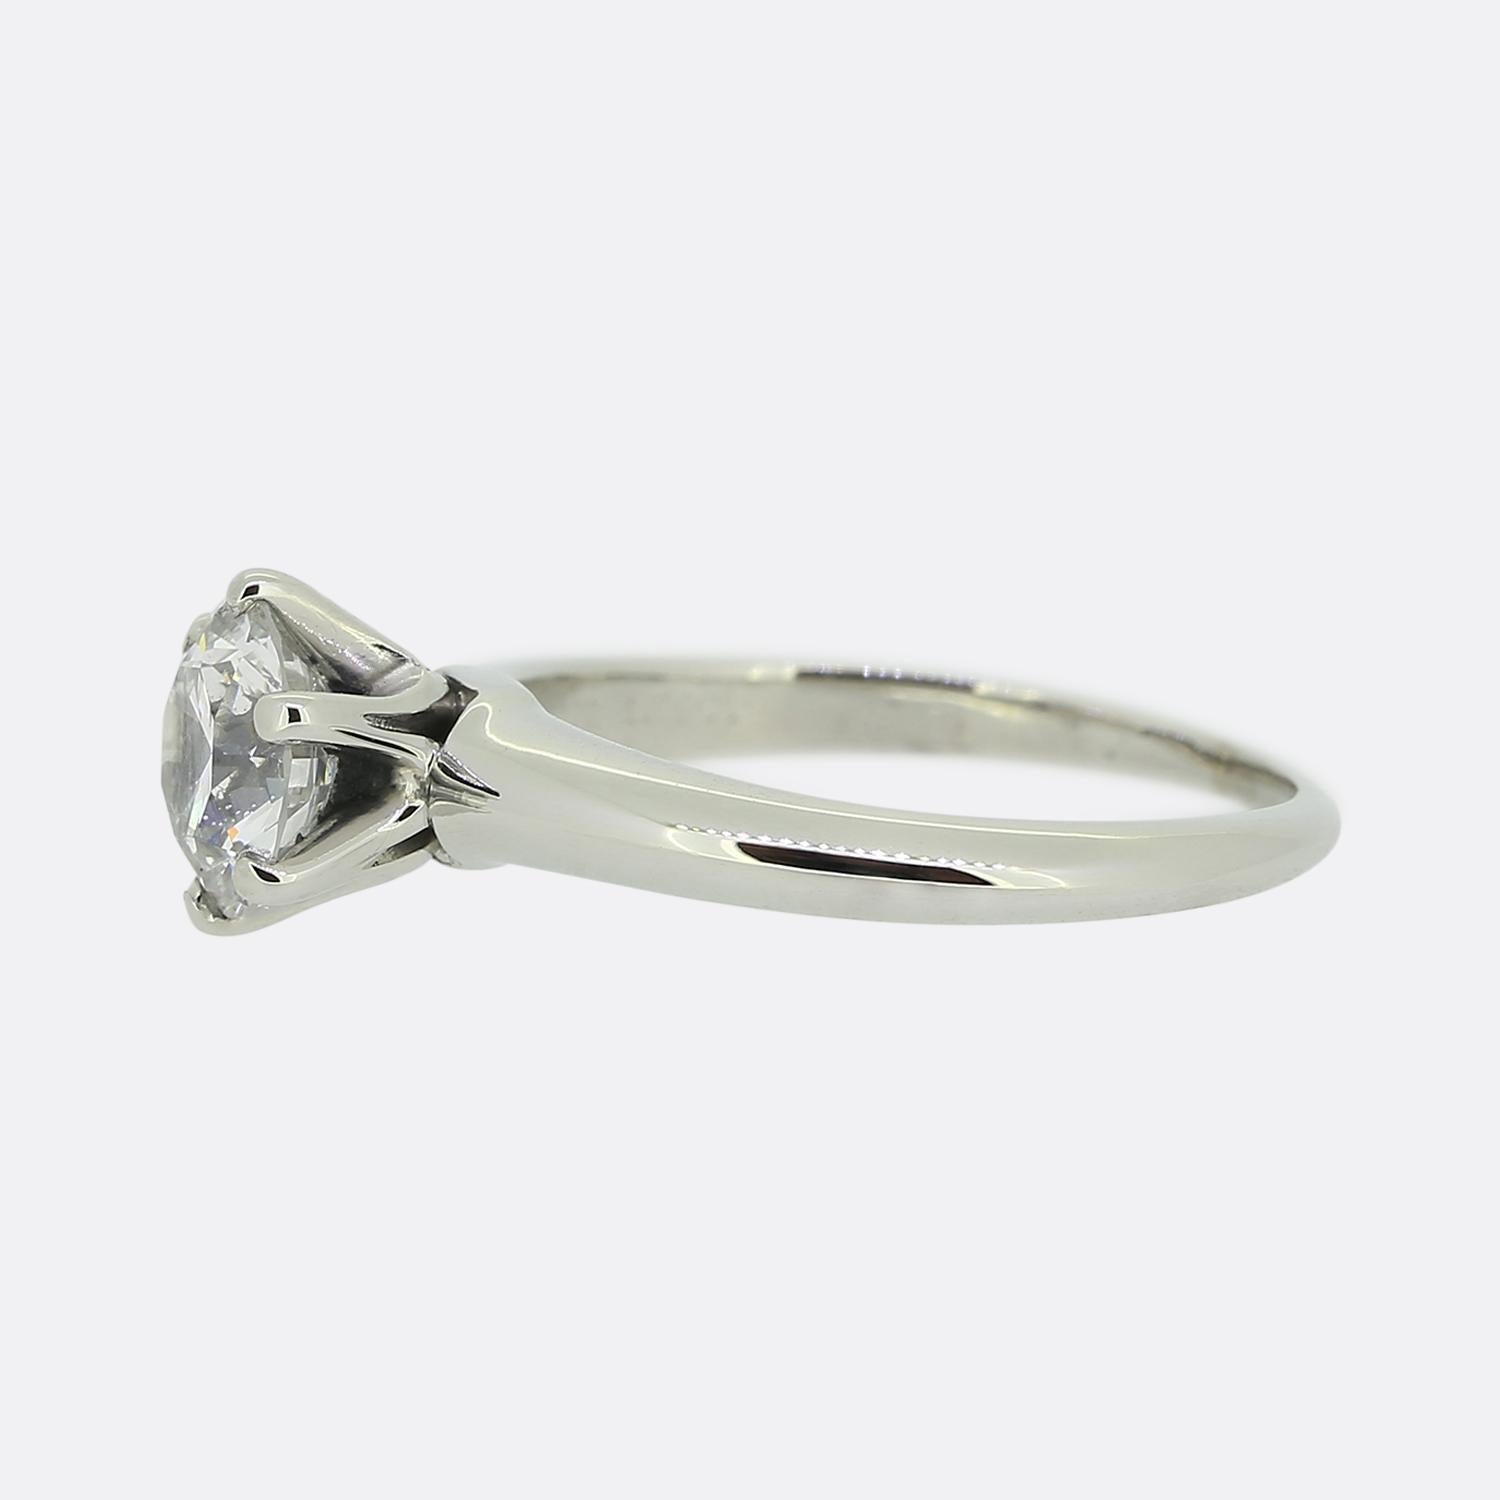 Nous avons ici une magnifique bague de fiançailles solitaire du créateur de bijoux de renommée mondiale, Tiffany & Co. La pierre centrale est un superbe diamant rond de 1,01 carat taillé en brillant, serti dans une monture emblématique de Tiffany à